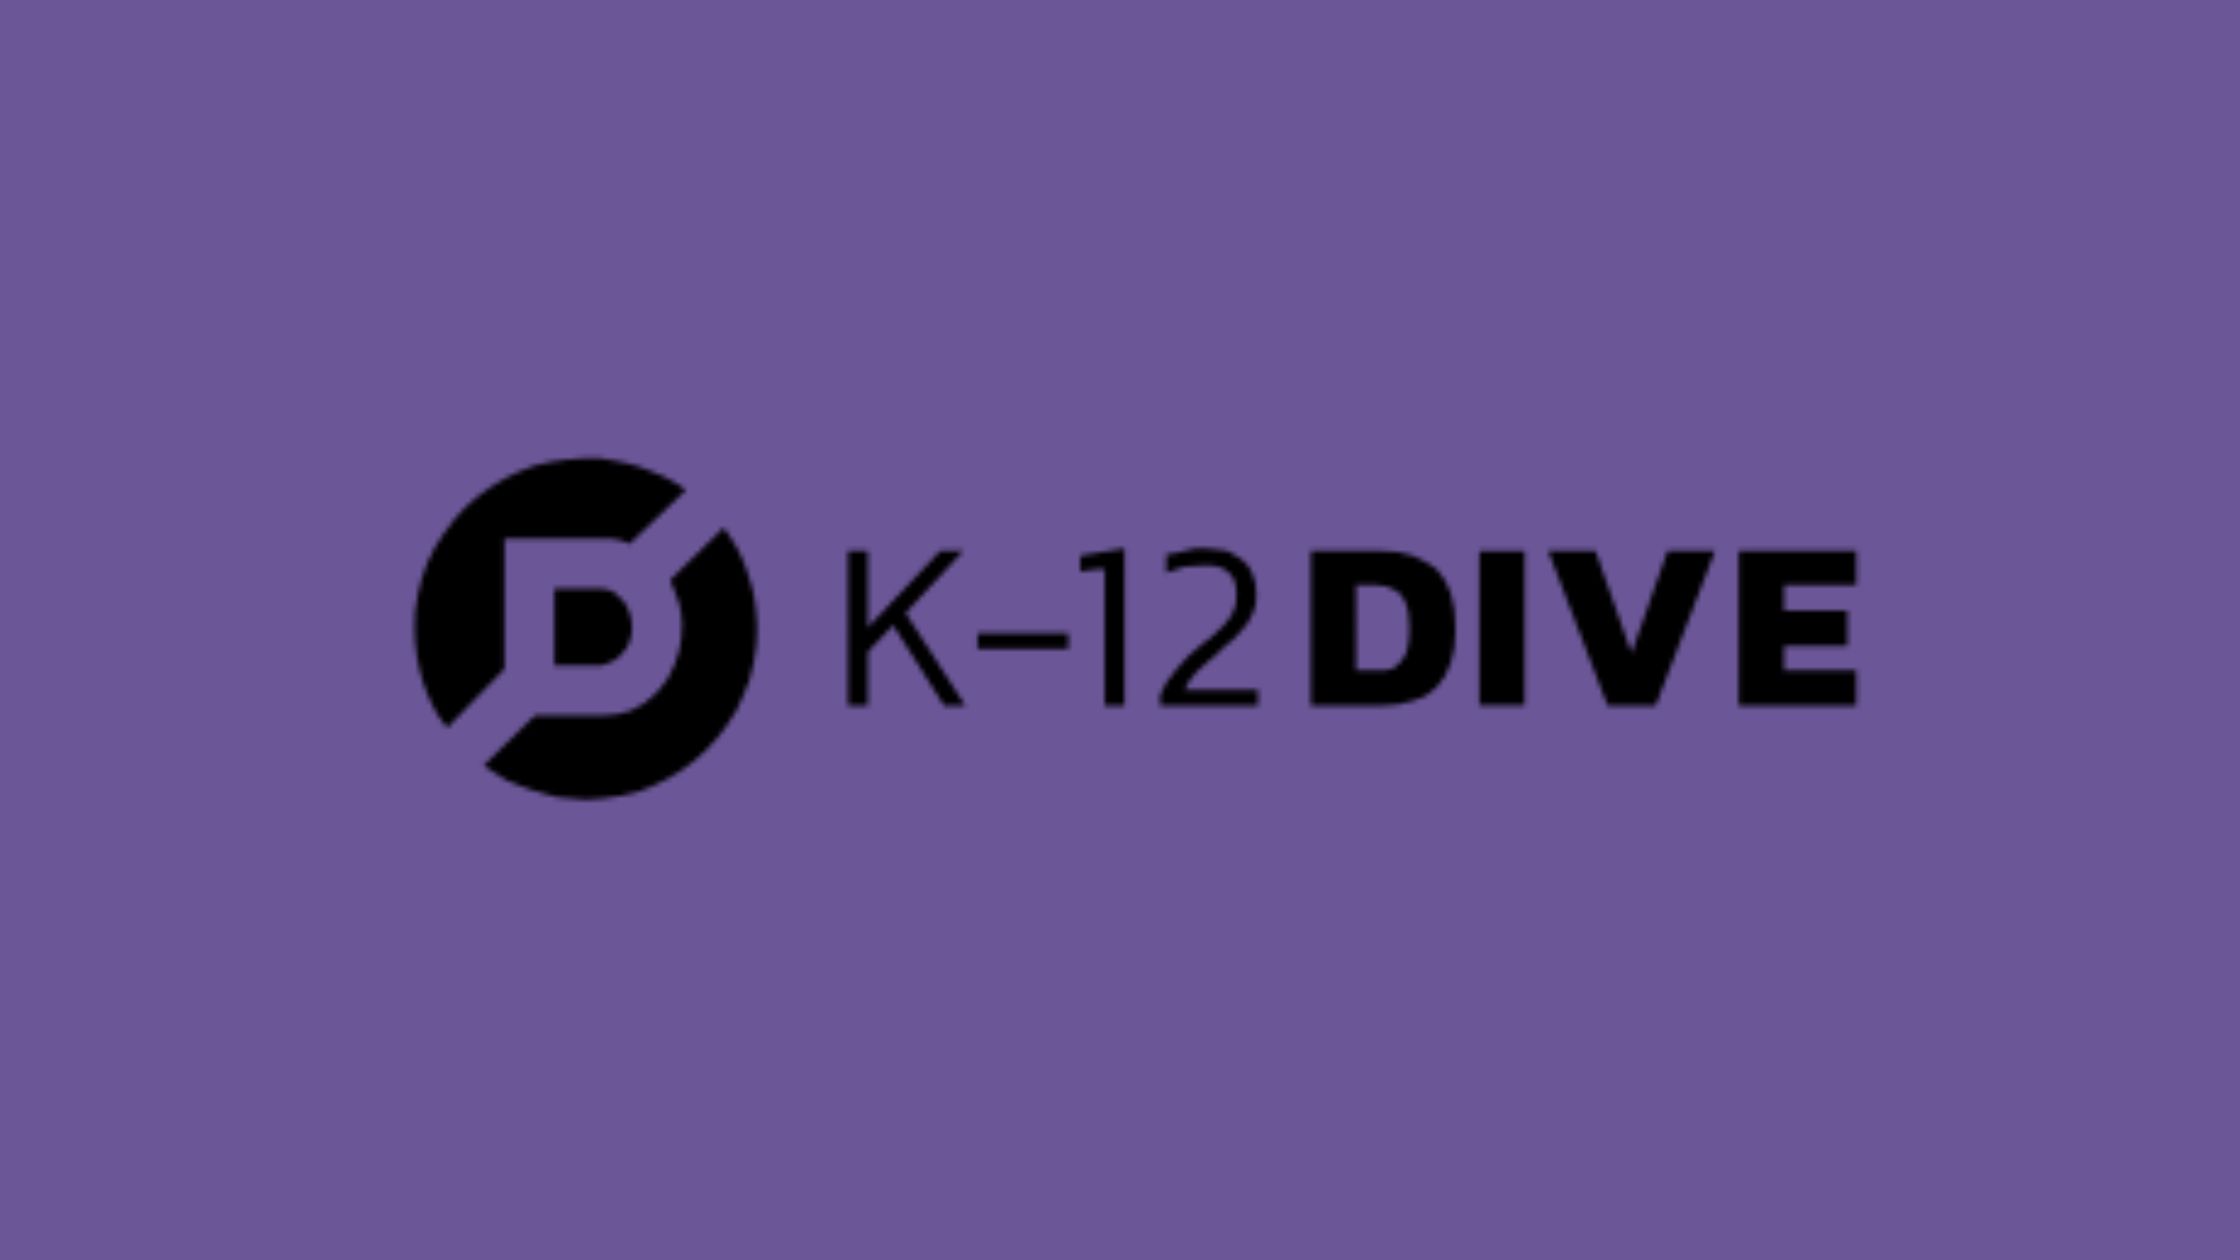 K-12Dive Announcement 